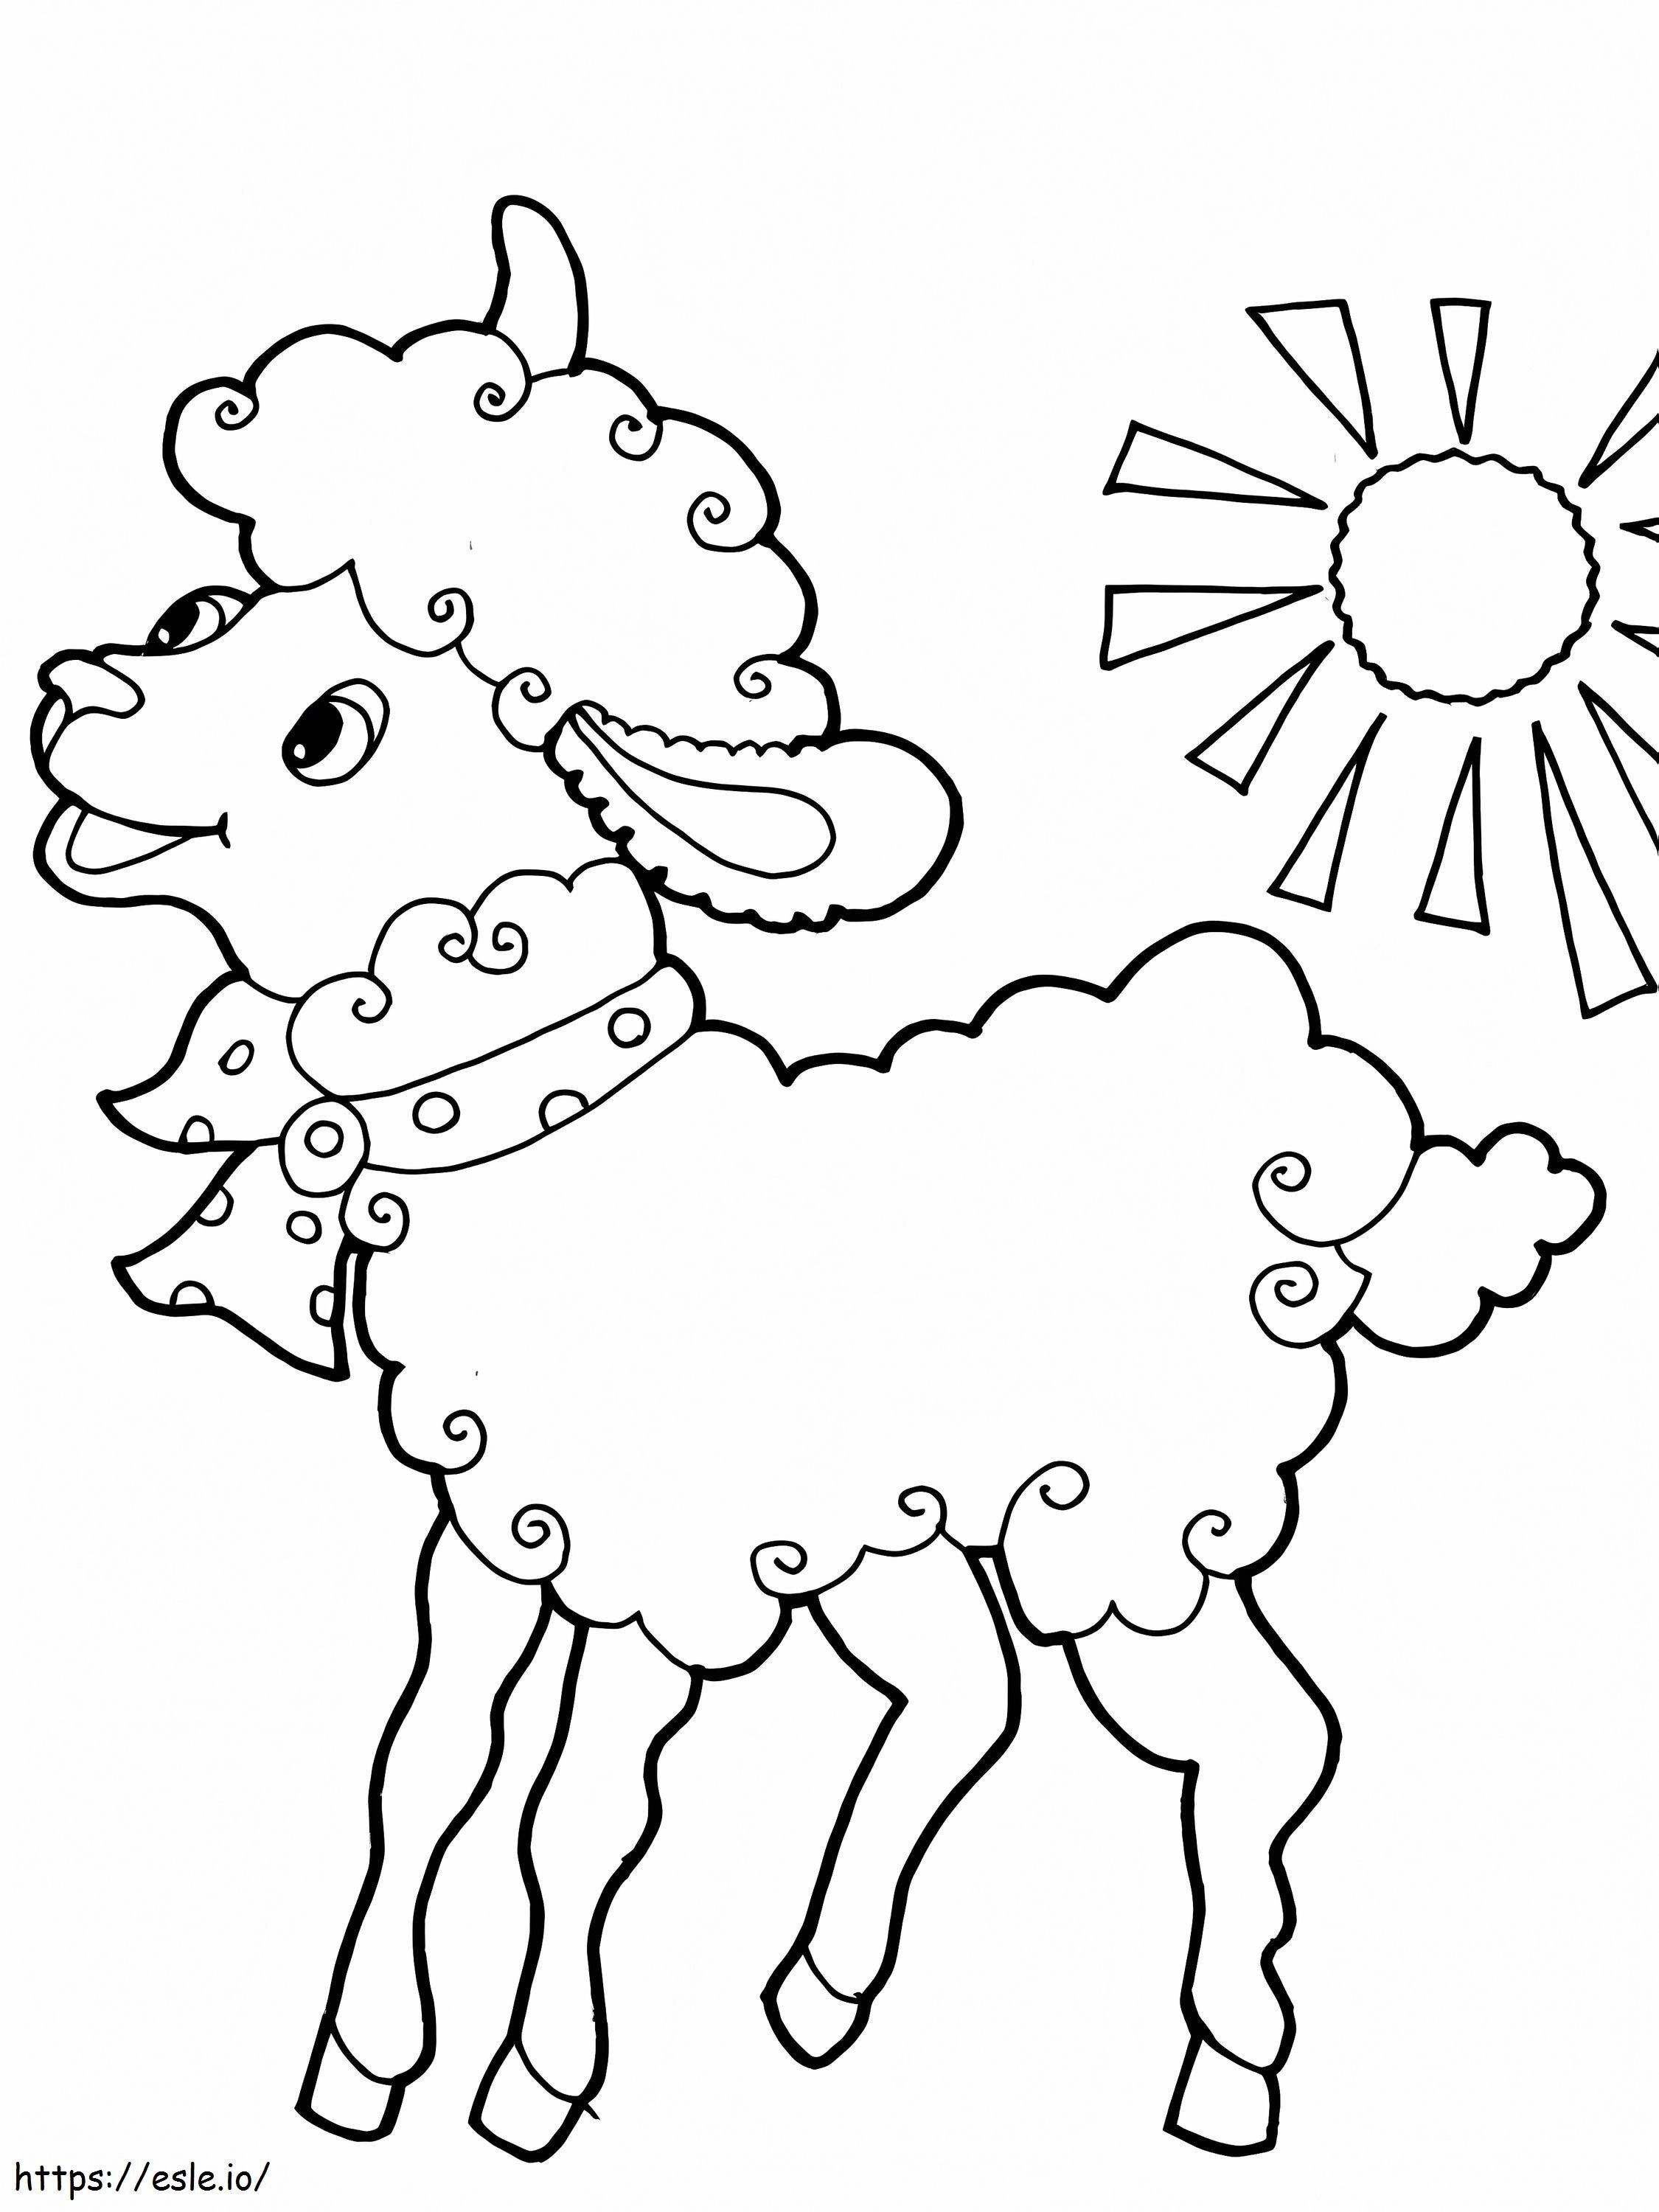 ovelha de desenho animado para colorir